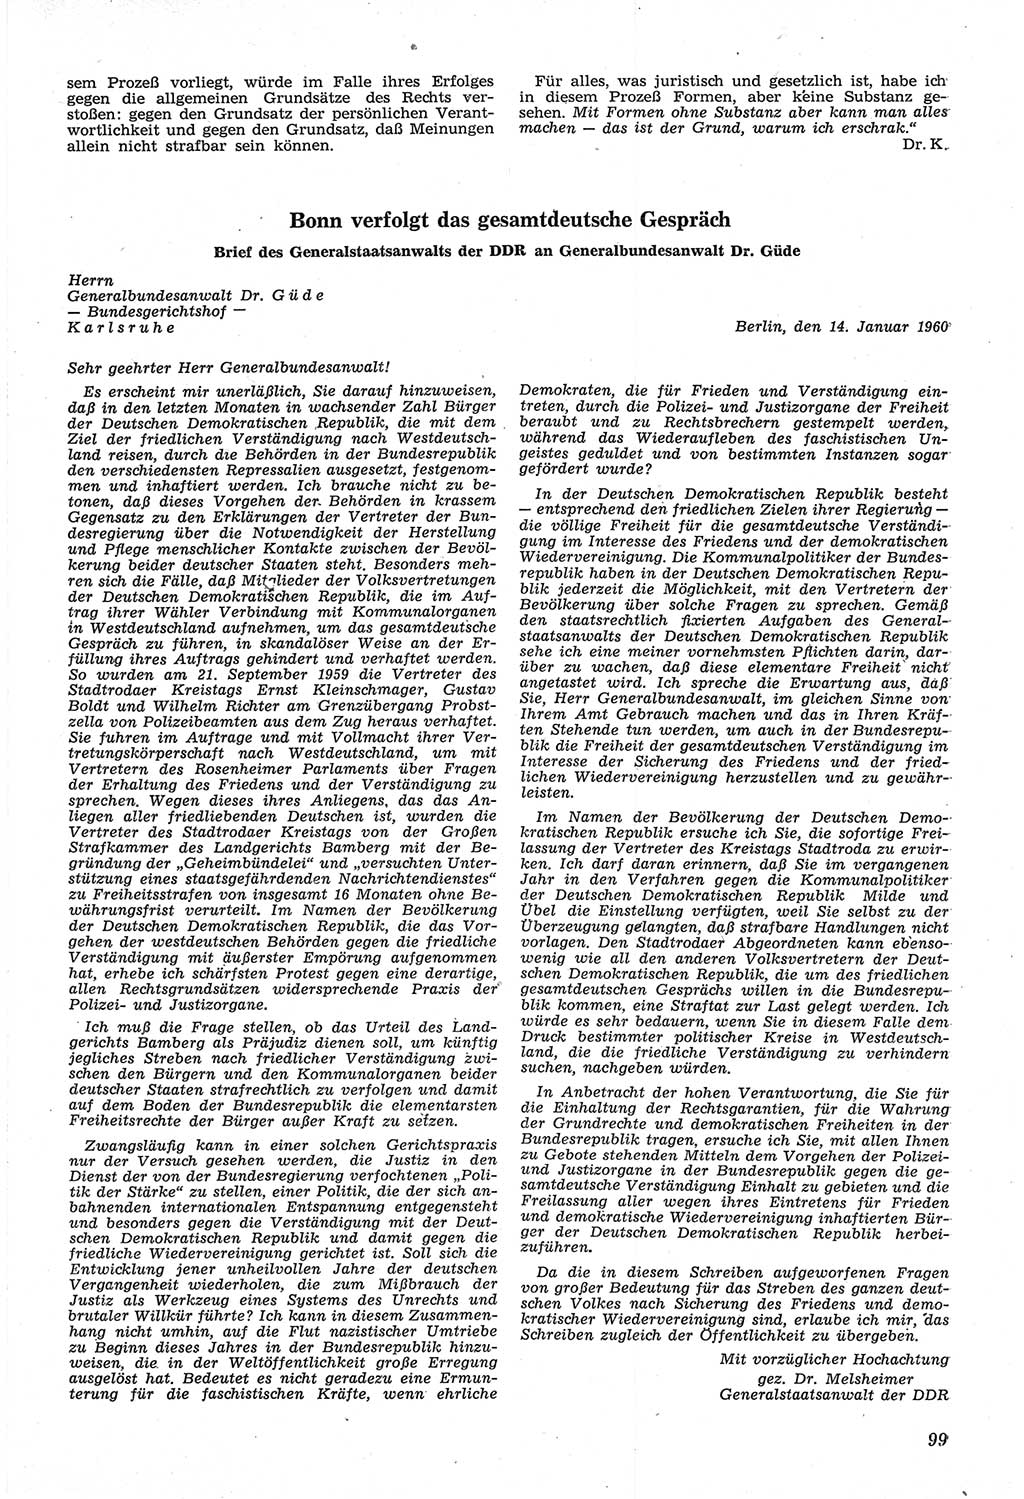 Neue Justiz (NJ), Zeitschrift für Recht und Rechtswissenschaft [Deutsche Demokratische Republik (DDR)], 14. Jahrgang 1960, Seite 99 (NJ DDR 1960, S. 99)